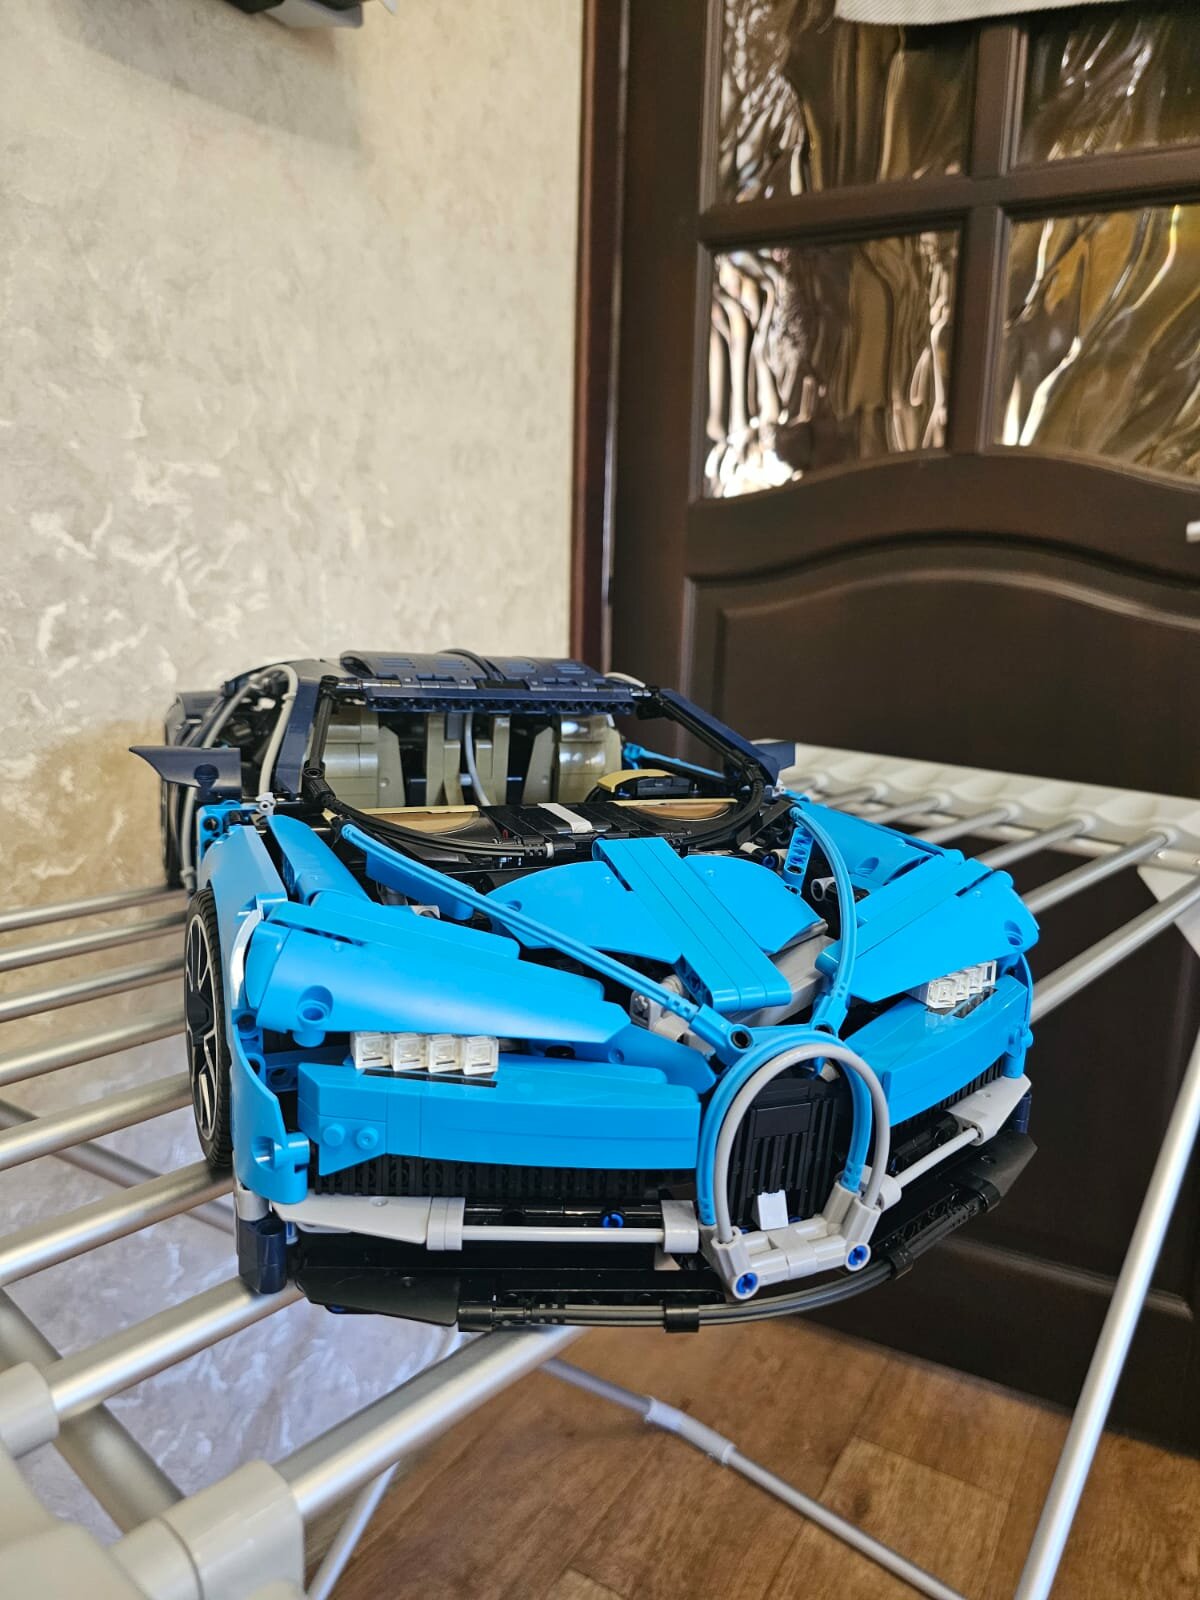 Конструктор лего-совместимый Lepin 7802 "Blue Bugatti" 4024 детали подарок сыну, внуку, племяннику, ребёнку, мальчику